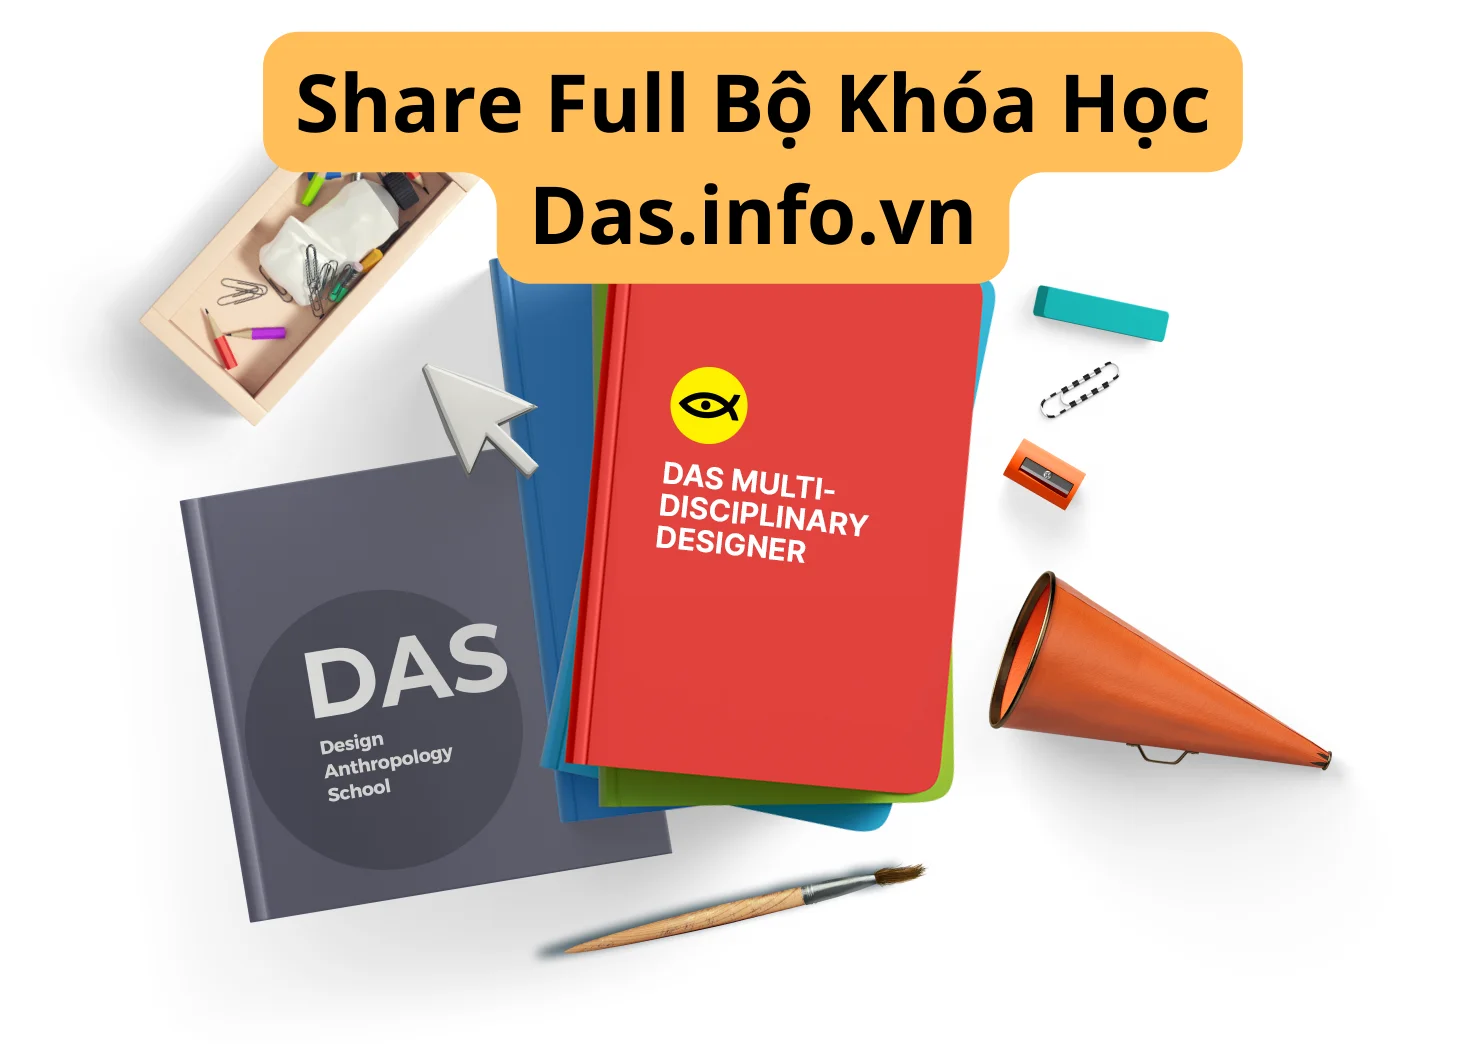 share khoa hoc Bo Khoa Hoc Das.info